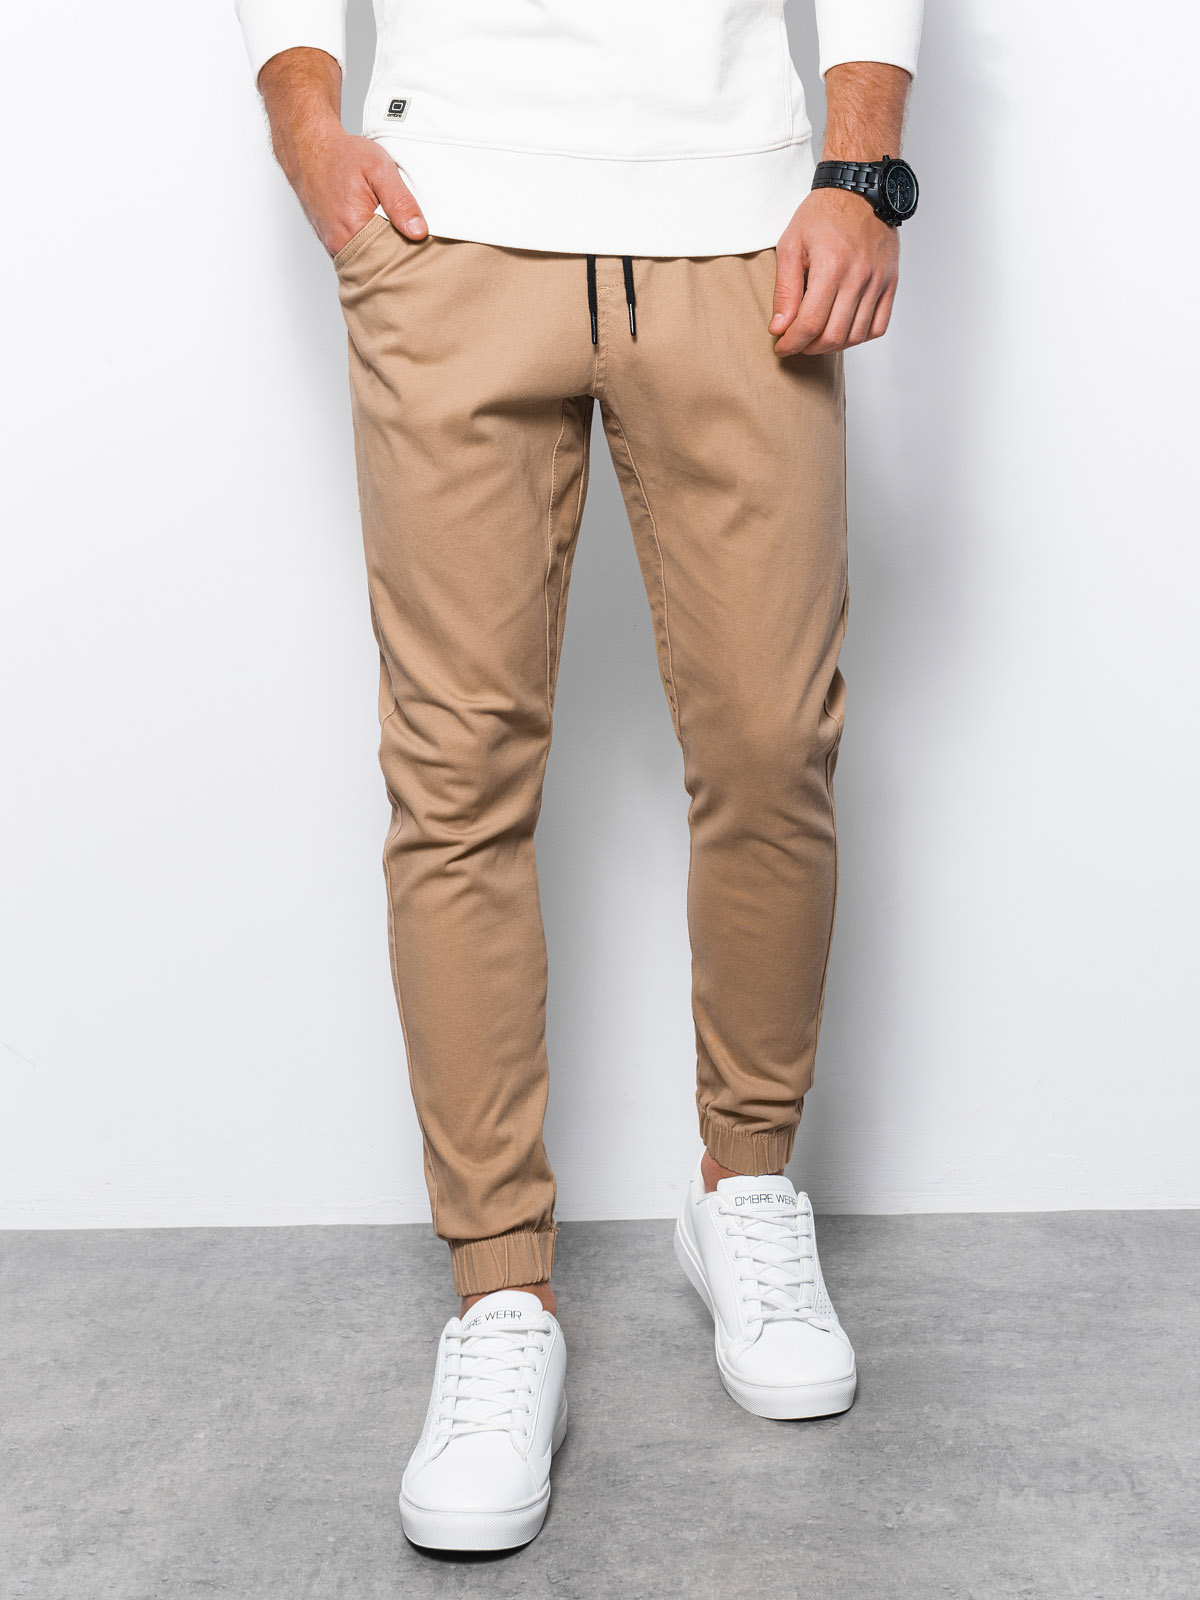 Men's pants joggers - camel P885  MODONE wholesale - Clothing For Men